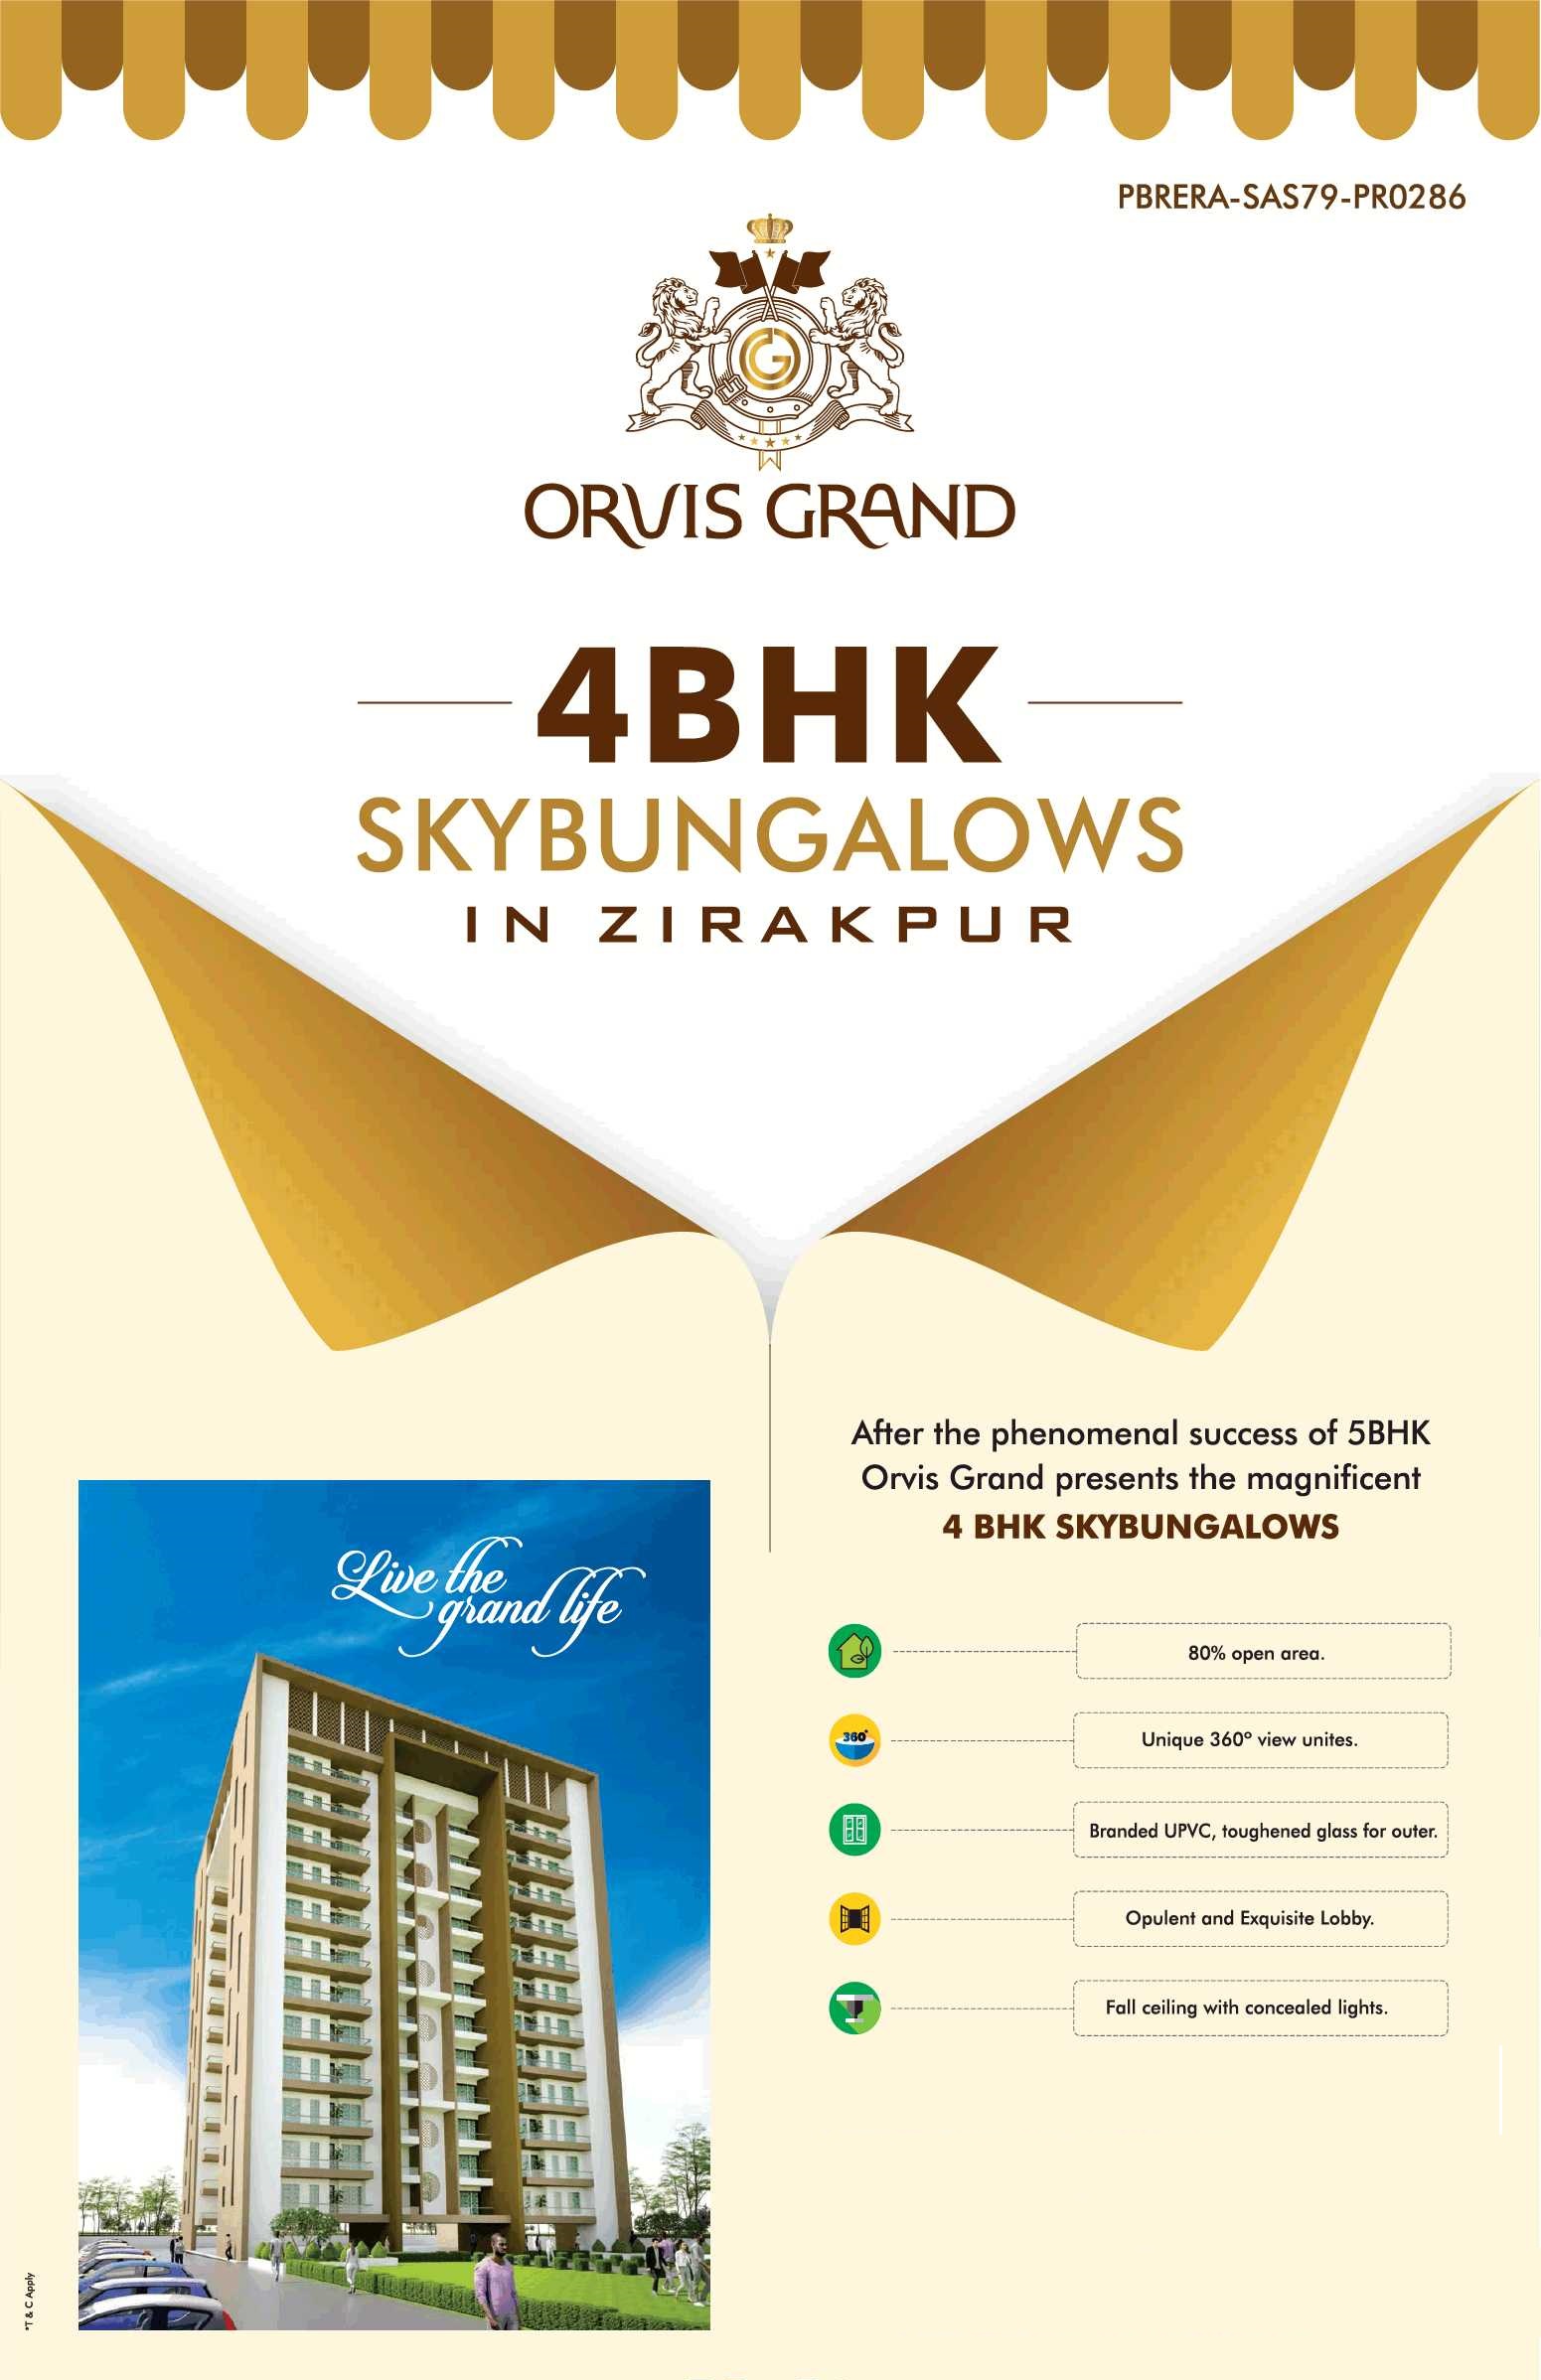 Book 4 BHK Sky Bungalows at Orvis Grand in Zirakpur